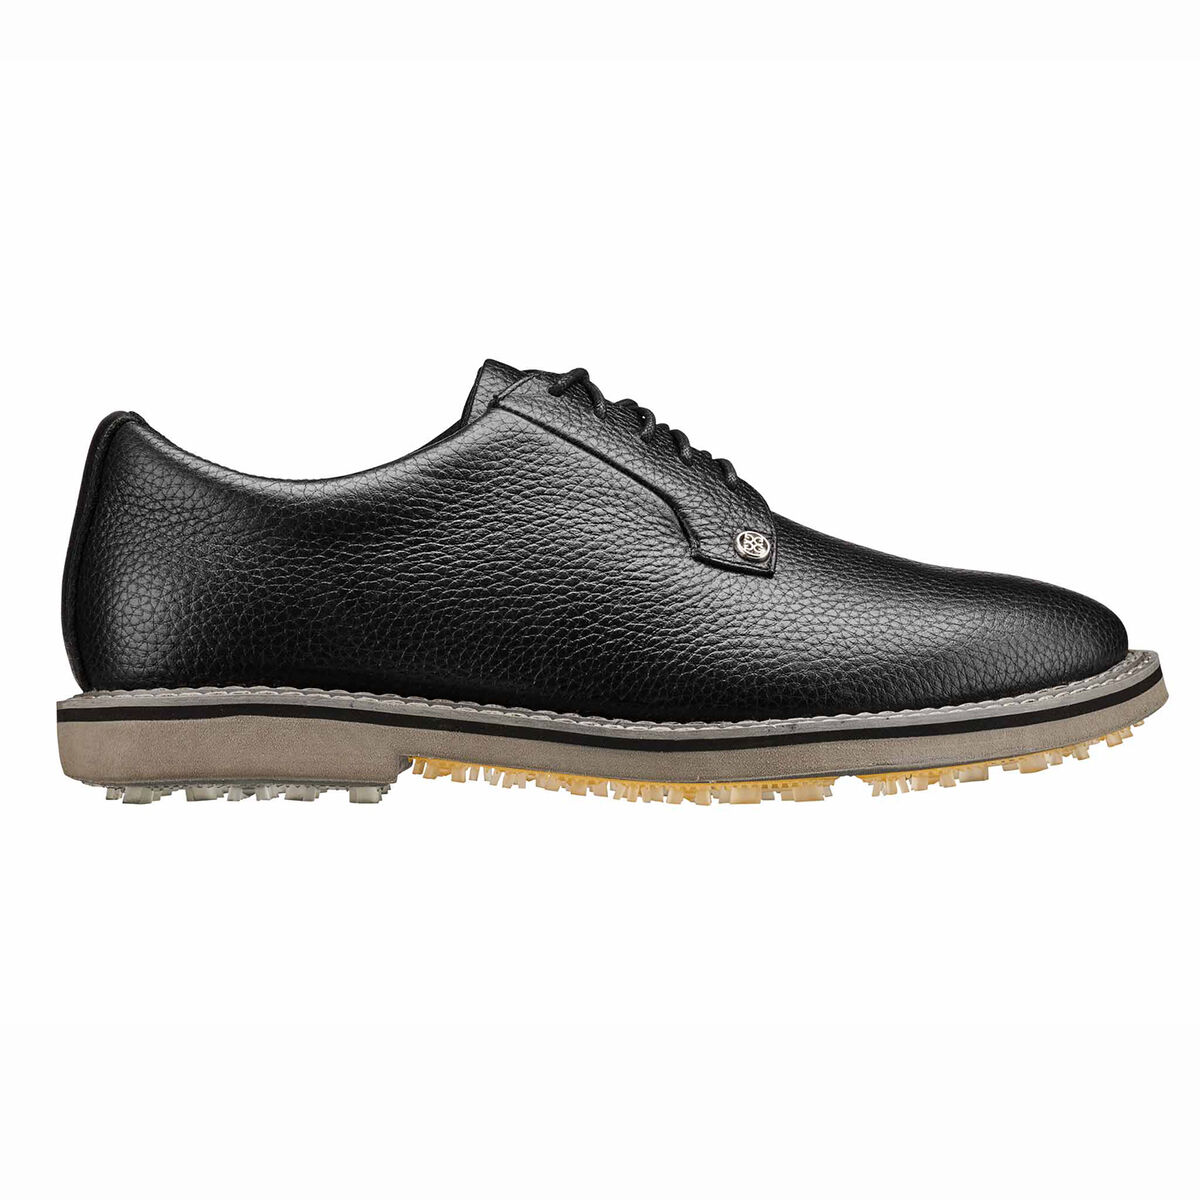 지포어 남성 골프화 G/FORE Collection Gallivanter Mens Golf Shoe - Black,Black/Charcoal